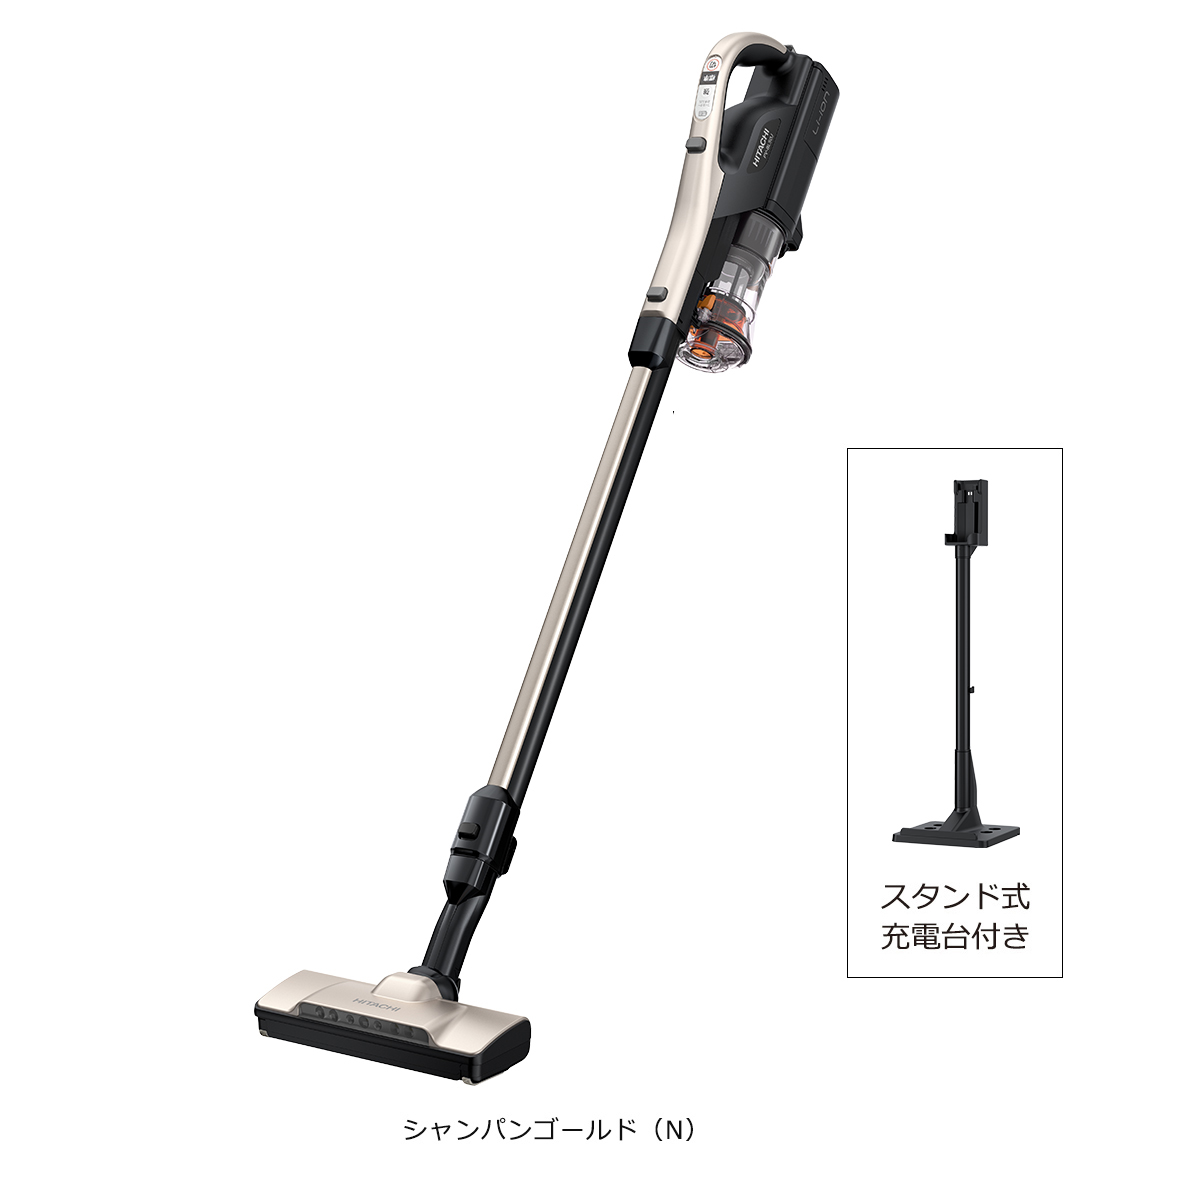 【美品】日立 PV-BL50J スティッククリーナー 掃除機 生活家電 家電・スマホ・カメラ 格安 通販店舗